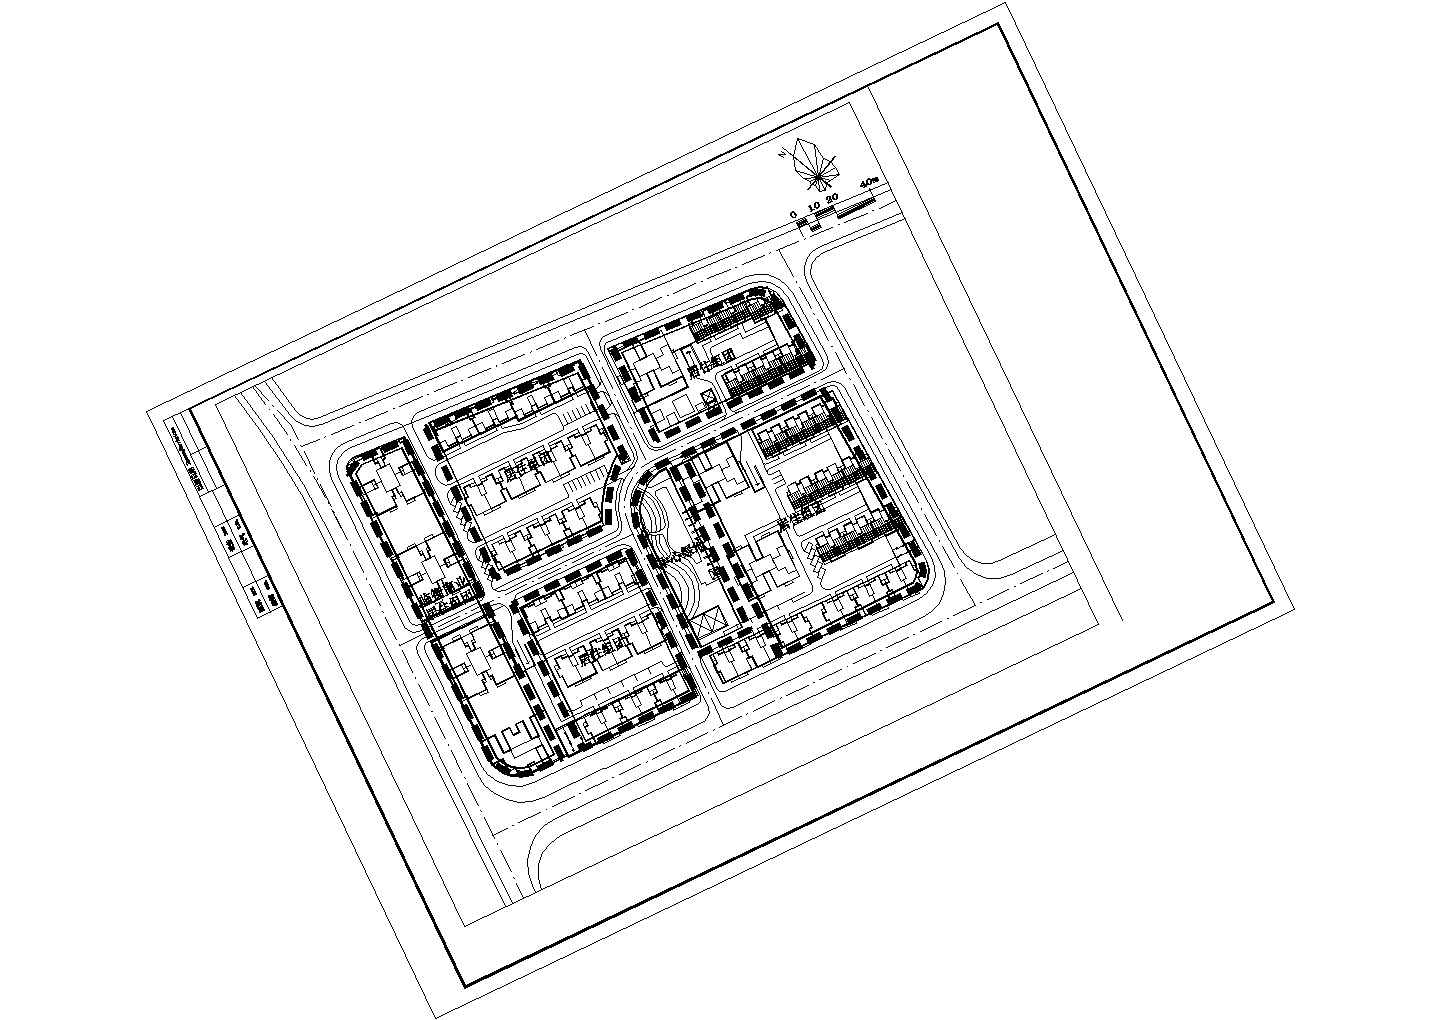 【龙信集团】舒兰市某街道新建小区规划设计总图